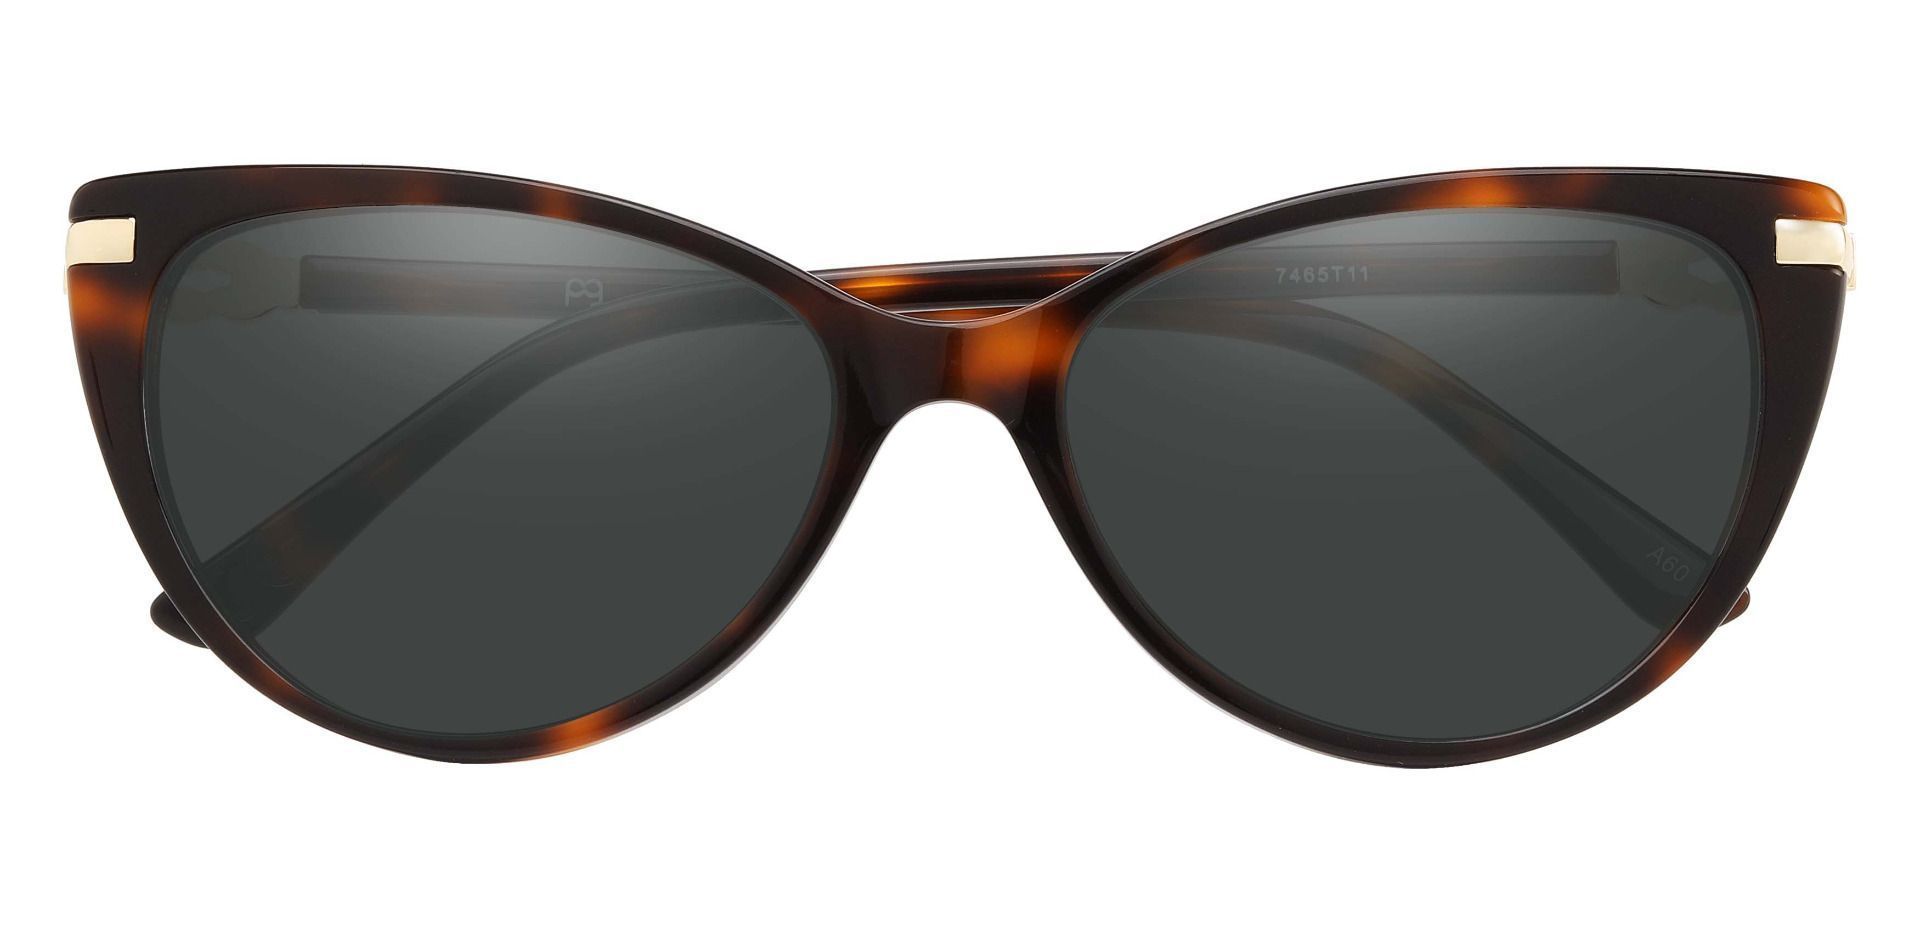 Starla Cat Eye Lined Bifocal Sunglasses - Tortoise Frame With Gray Lenses